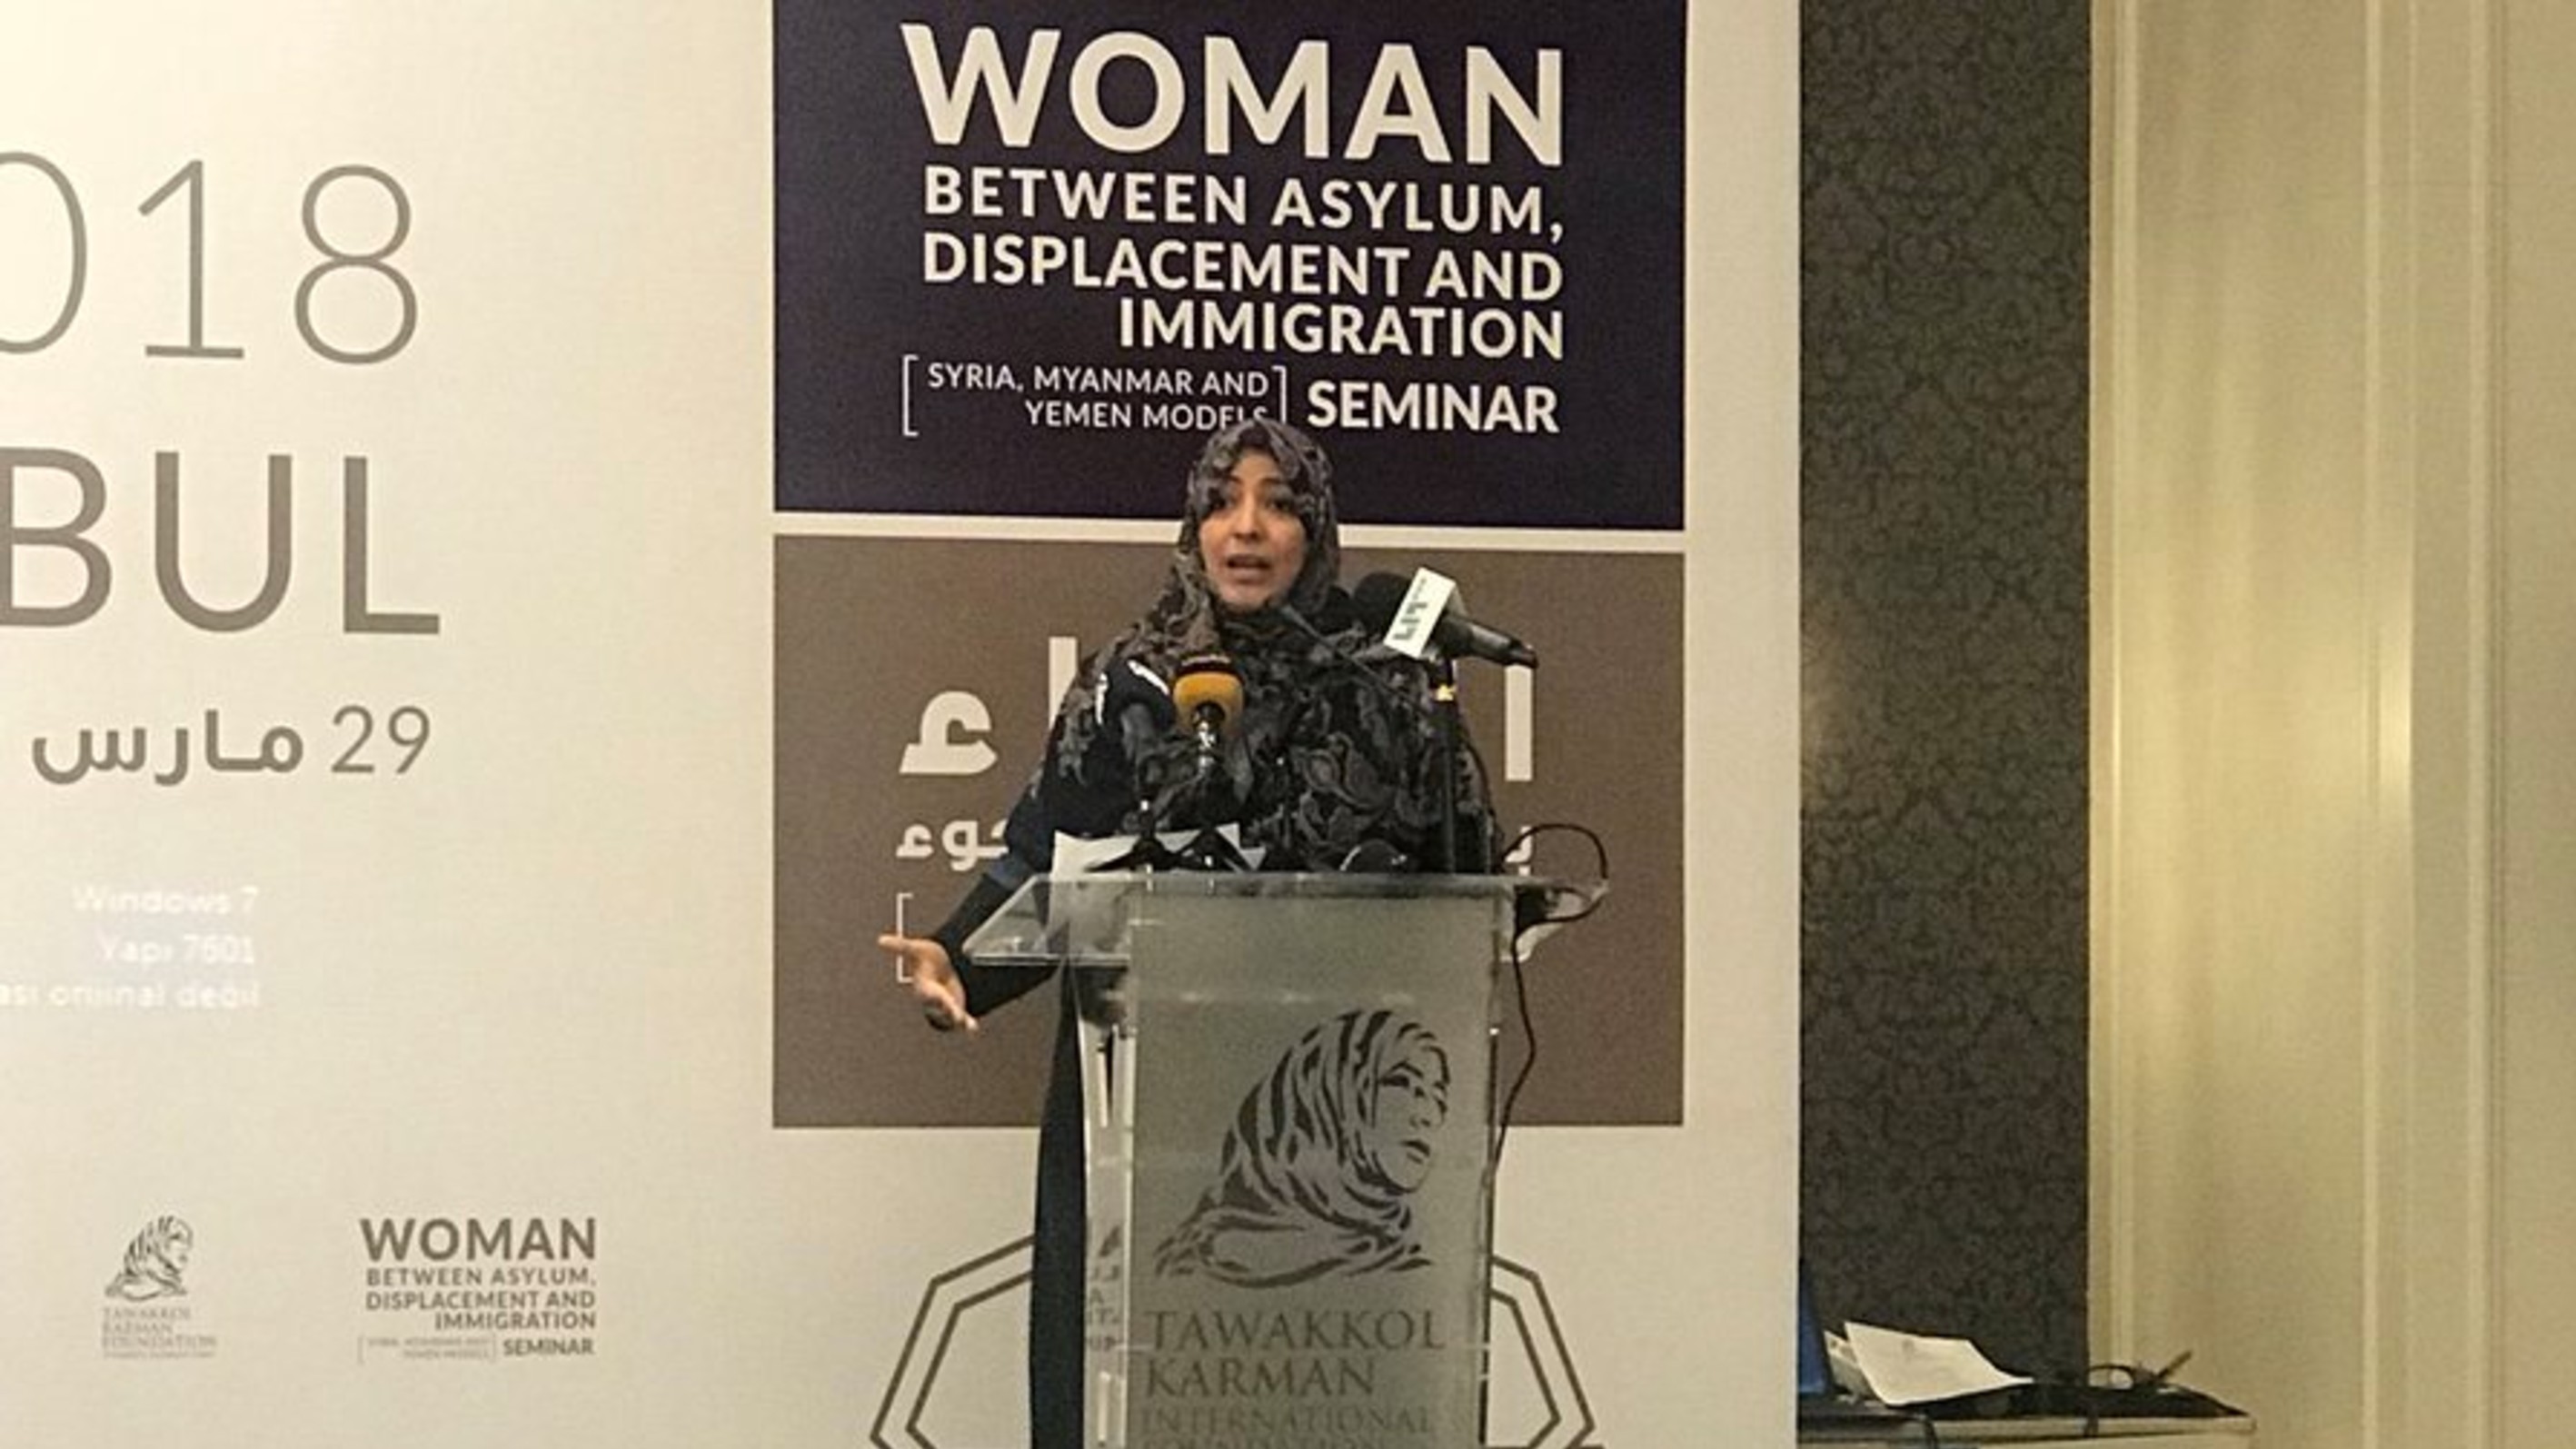 كلمة الناشطة الحائزة على جائزة نوبل للسلام توكل كرمان في ندوة "النساء بين النزوح واللجوء والهجرة" - اسطنبول/تركيا